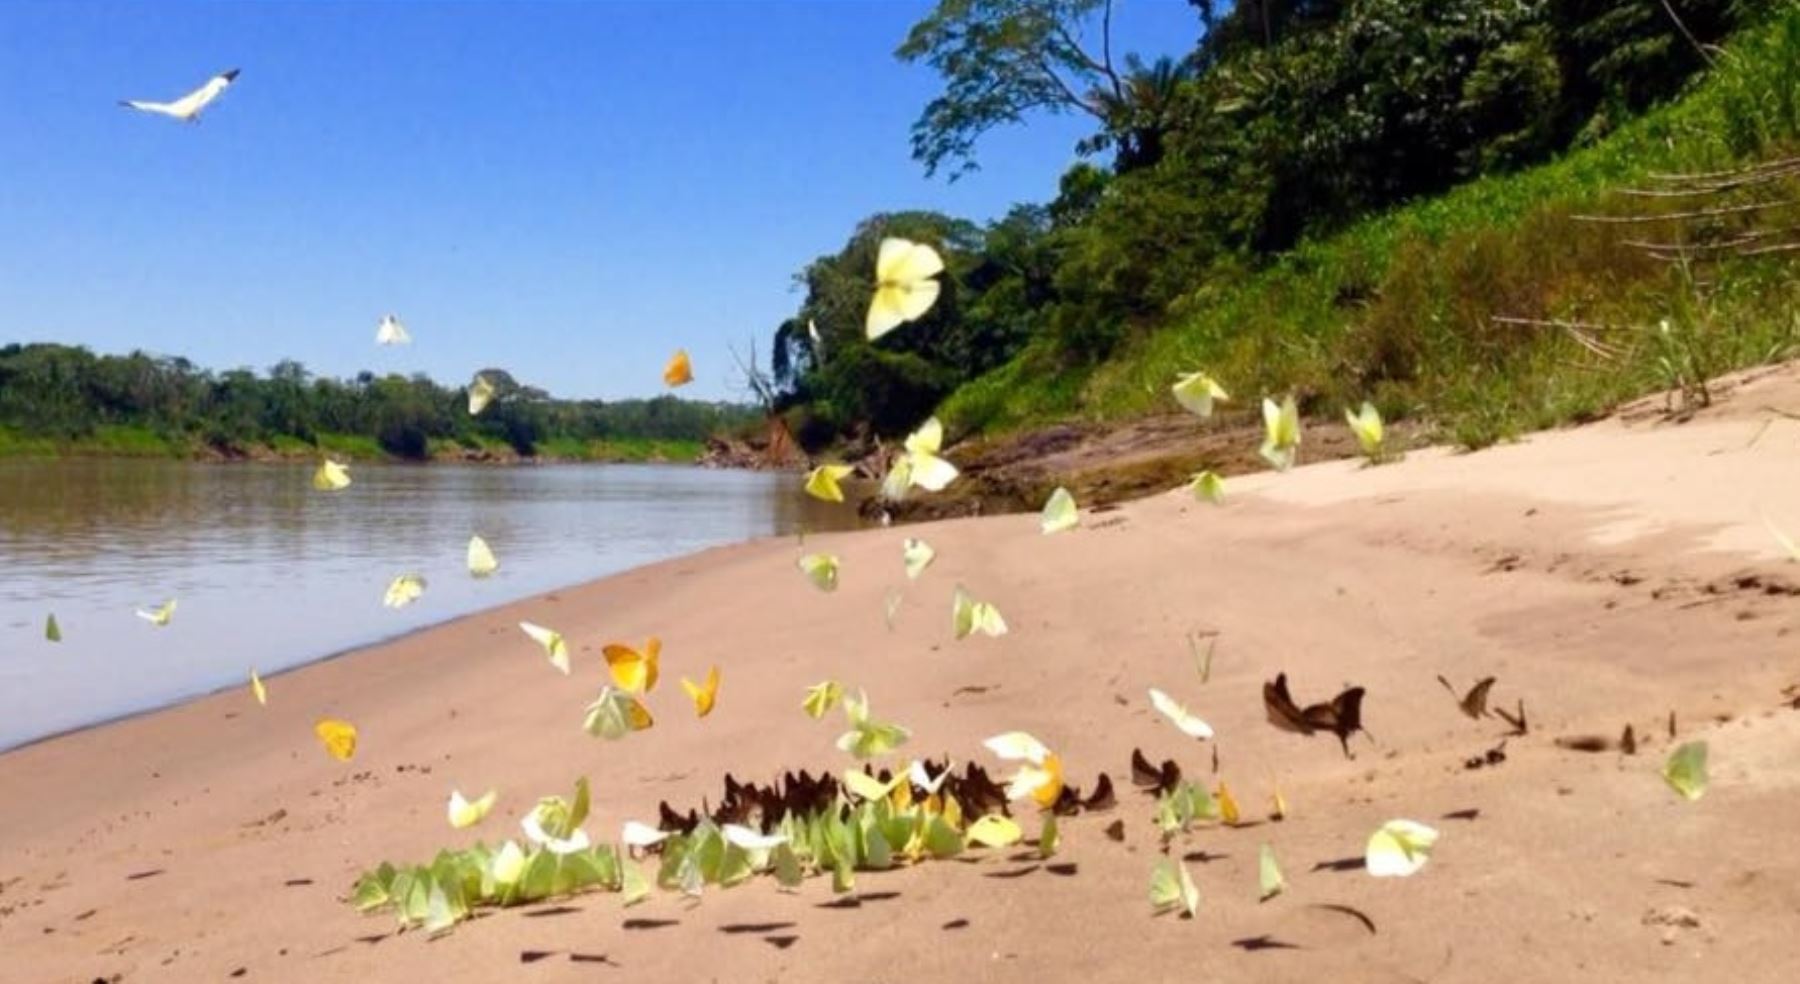 La Reserva Nacional Tambopata, ubicada en la región Madre de Dios, busca conservar la flora, la fauna y los procesos ecológicos de una muestra de la selva húmeda tropical. Foto: Facebook/Jaime Quispe Nina.